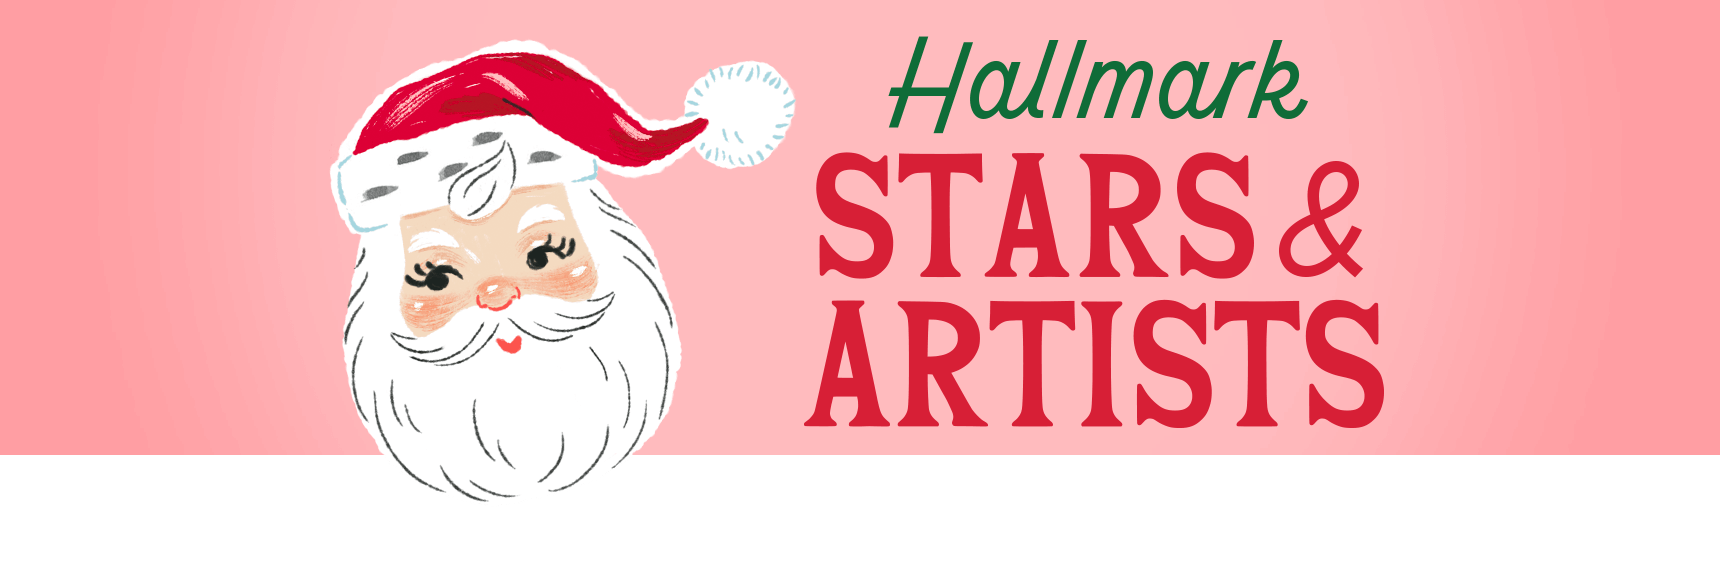 Hallmark Stars & Artists